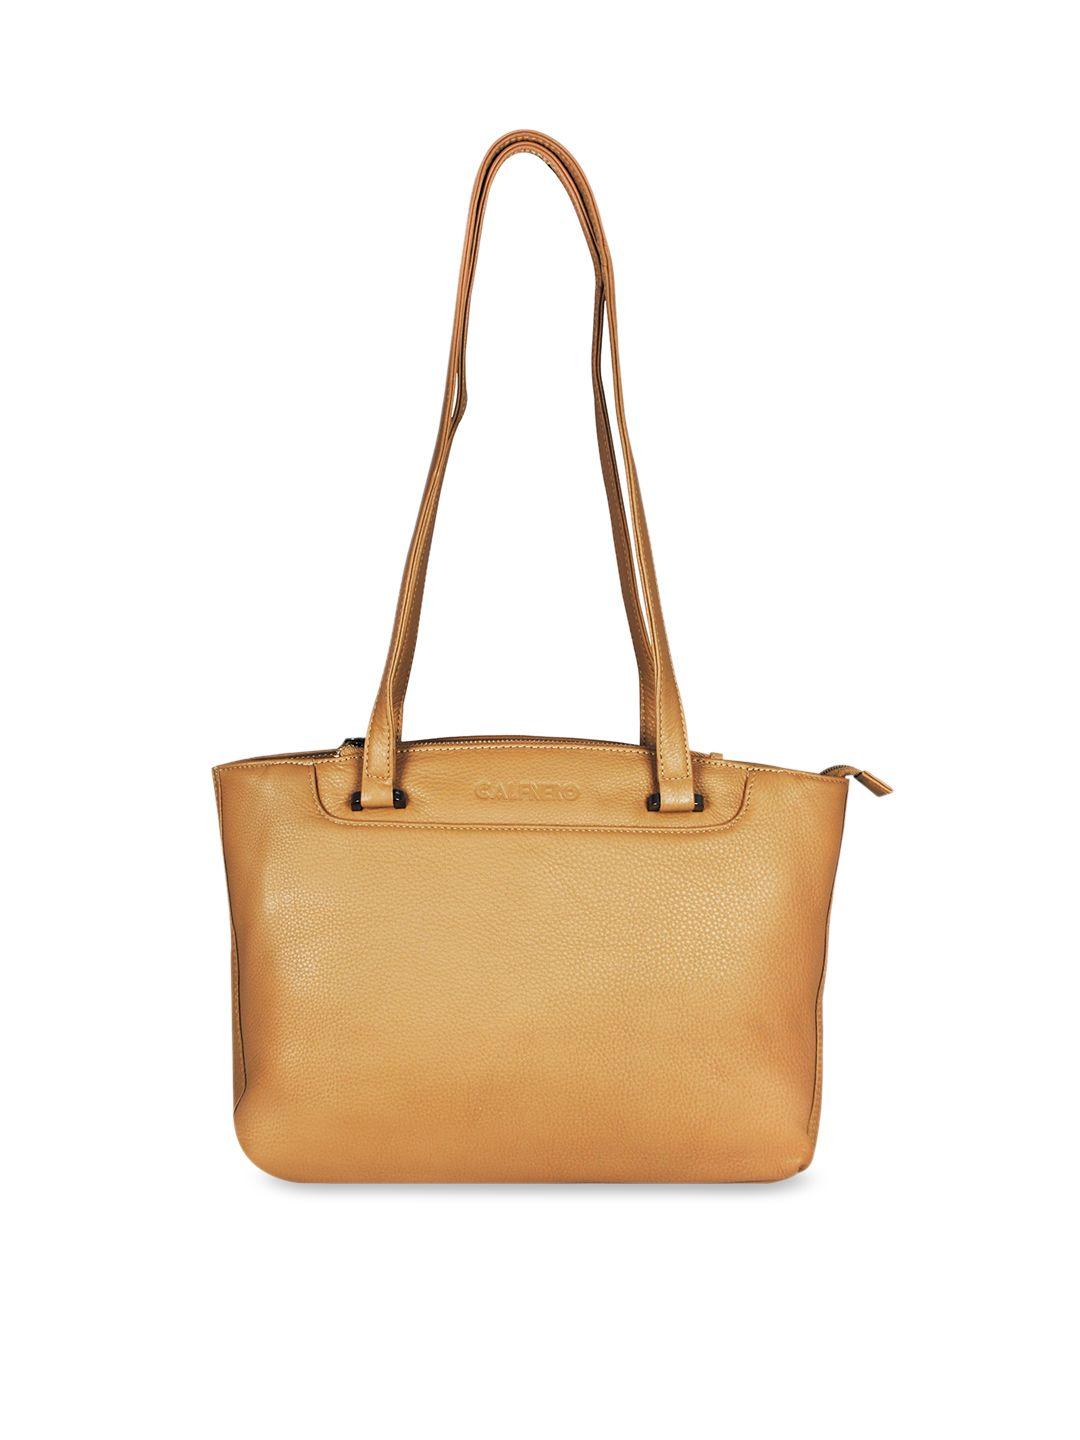 calfnero-beige-leather-structured-shoulder-bag